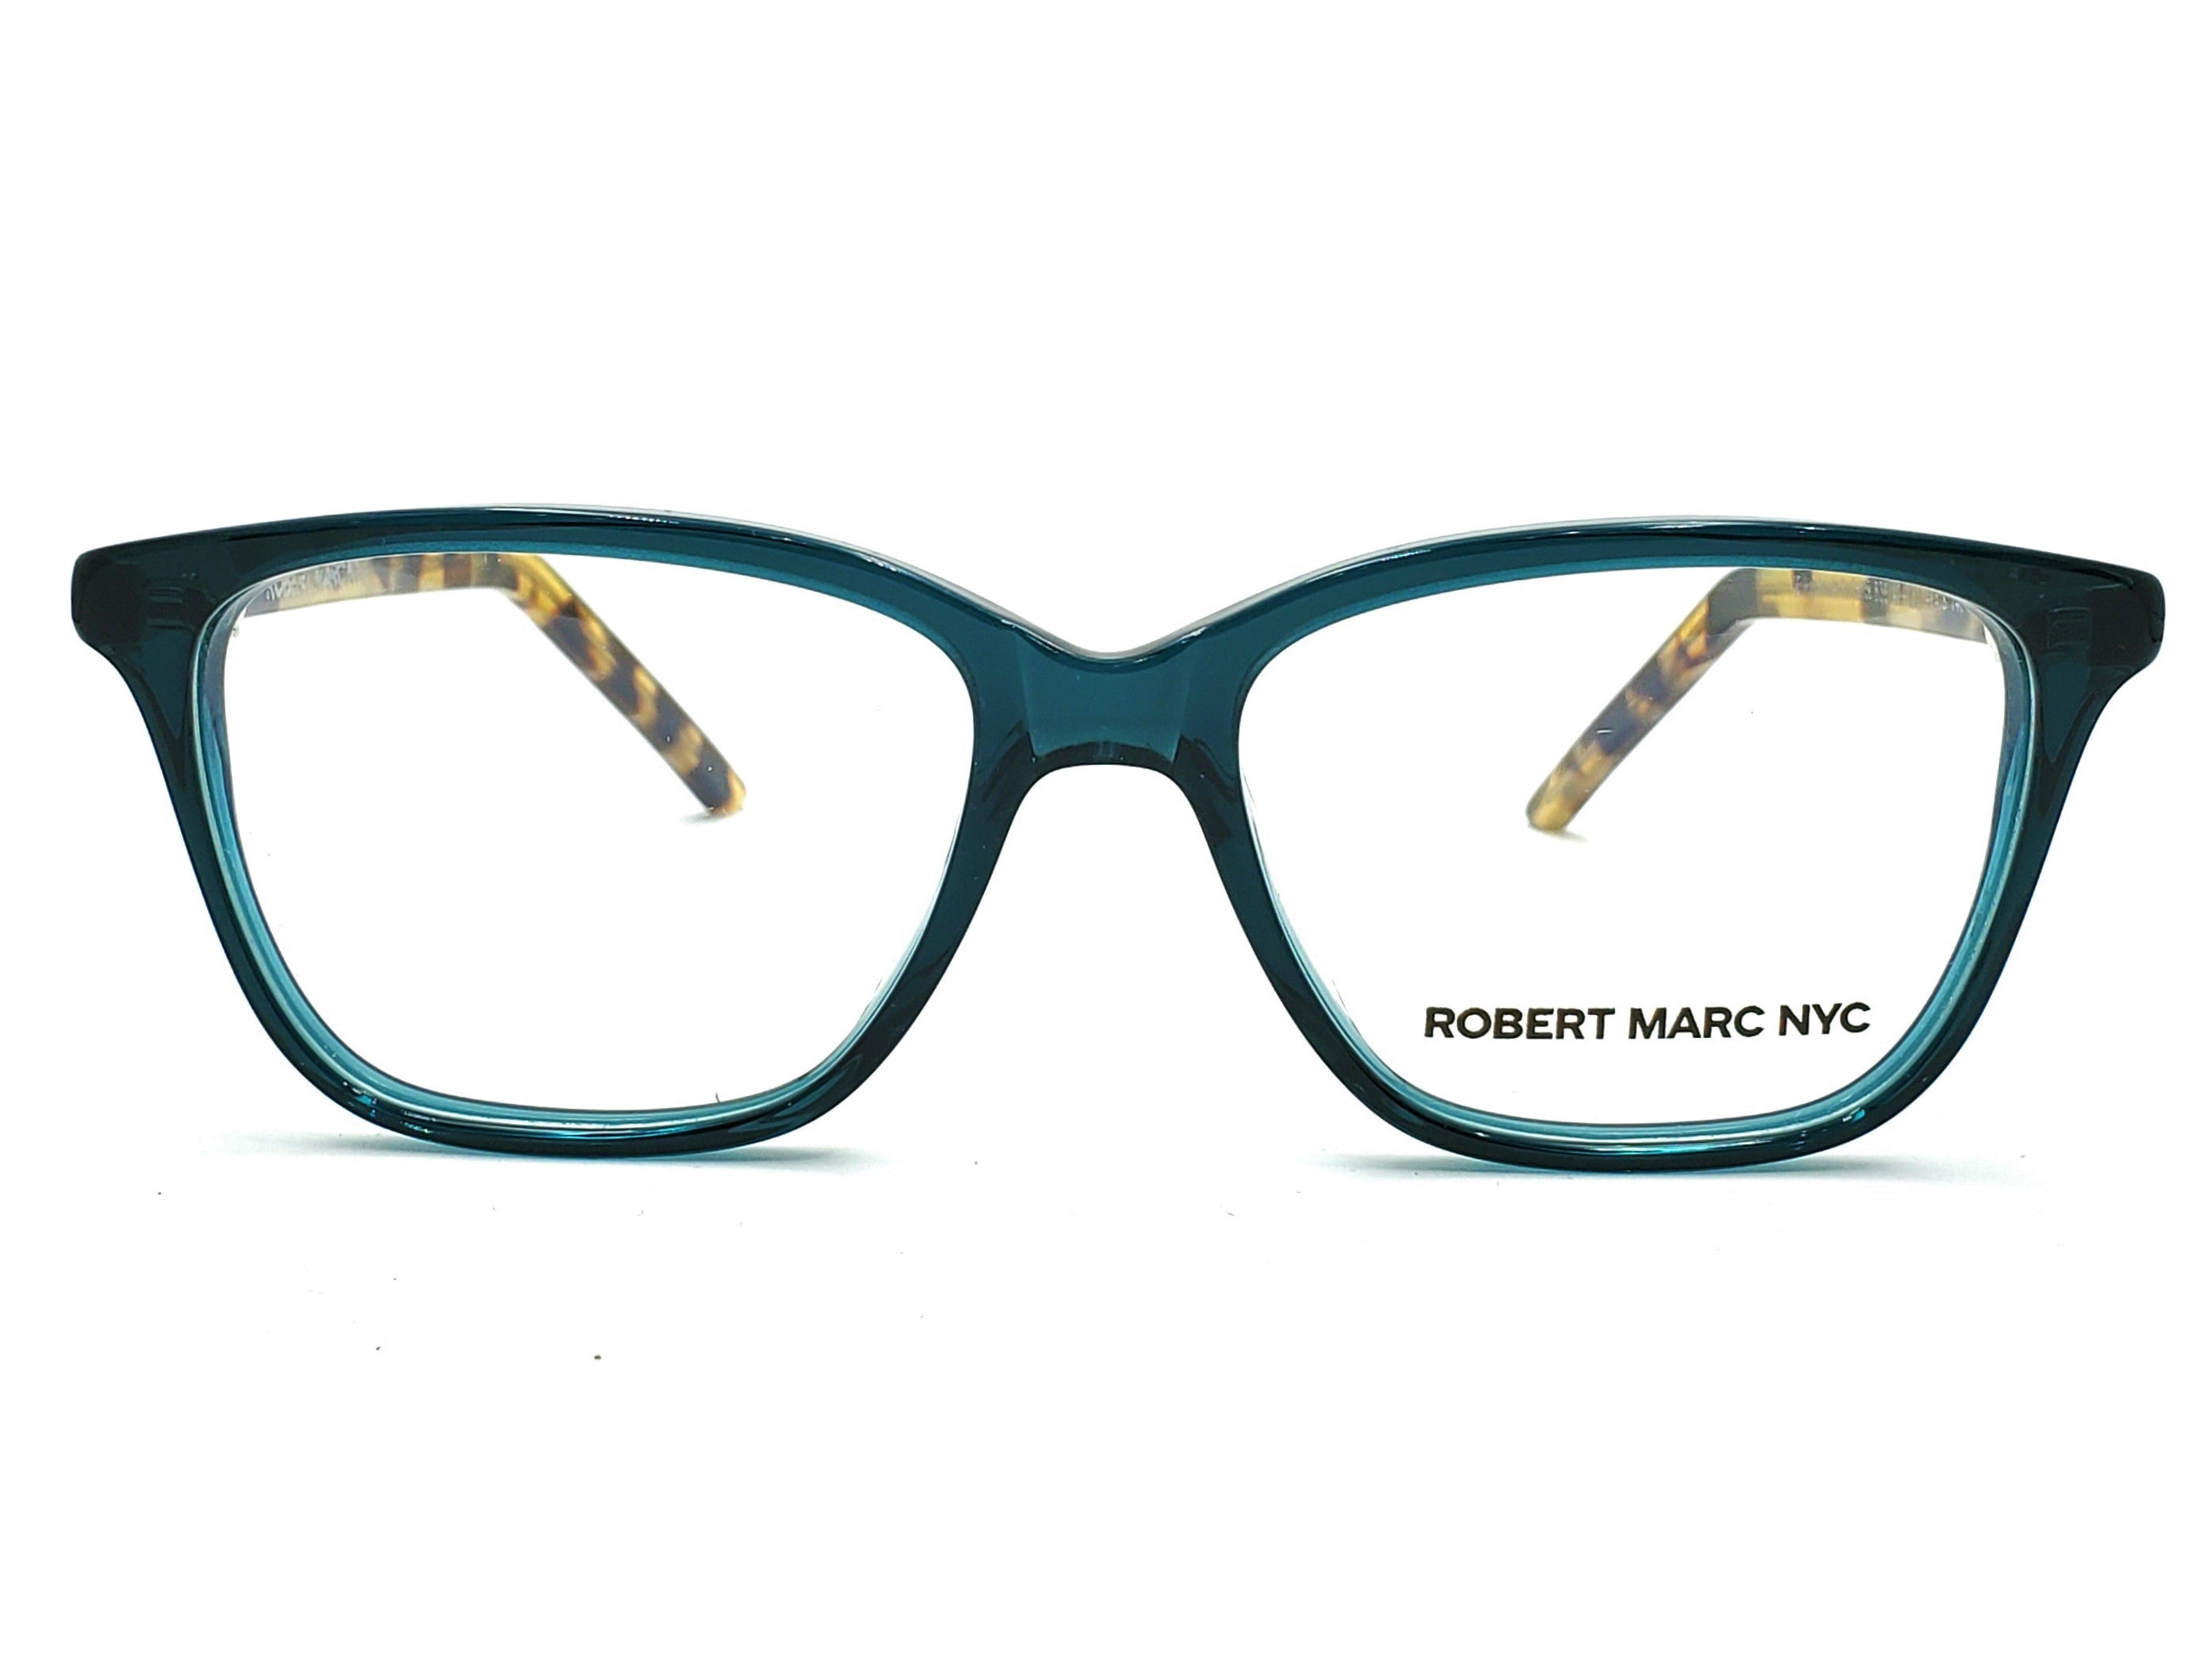 Robert Marc Eyeglasses Eye Glasses Frames 818-234 France ...